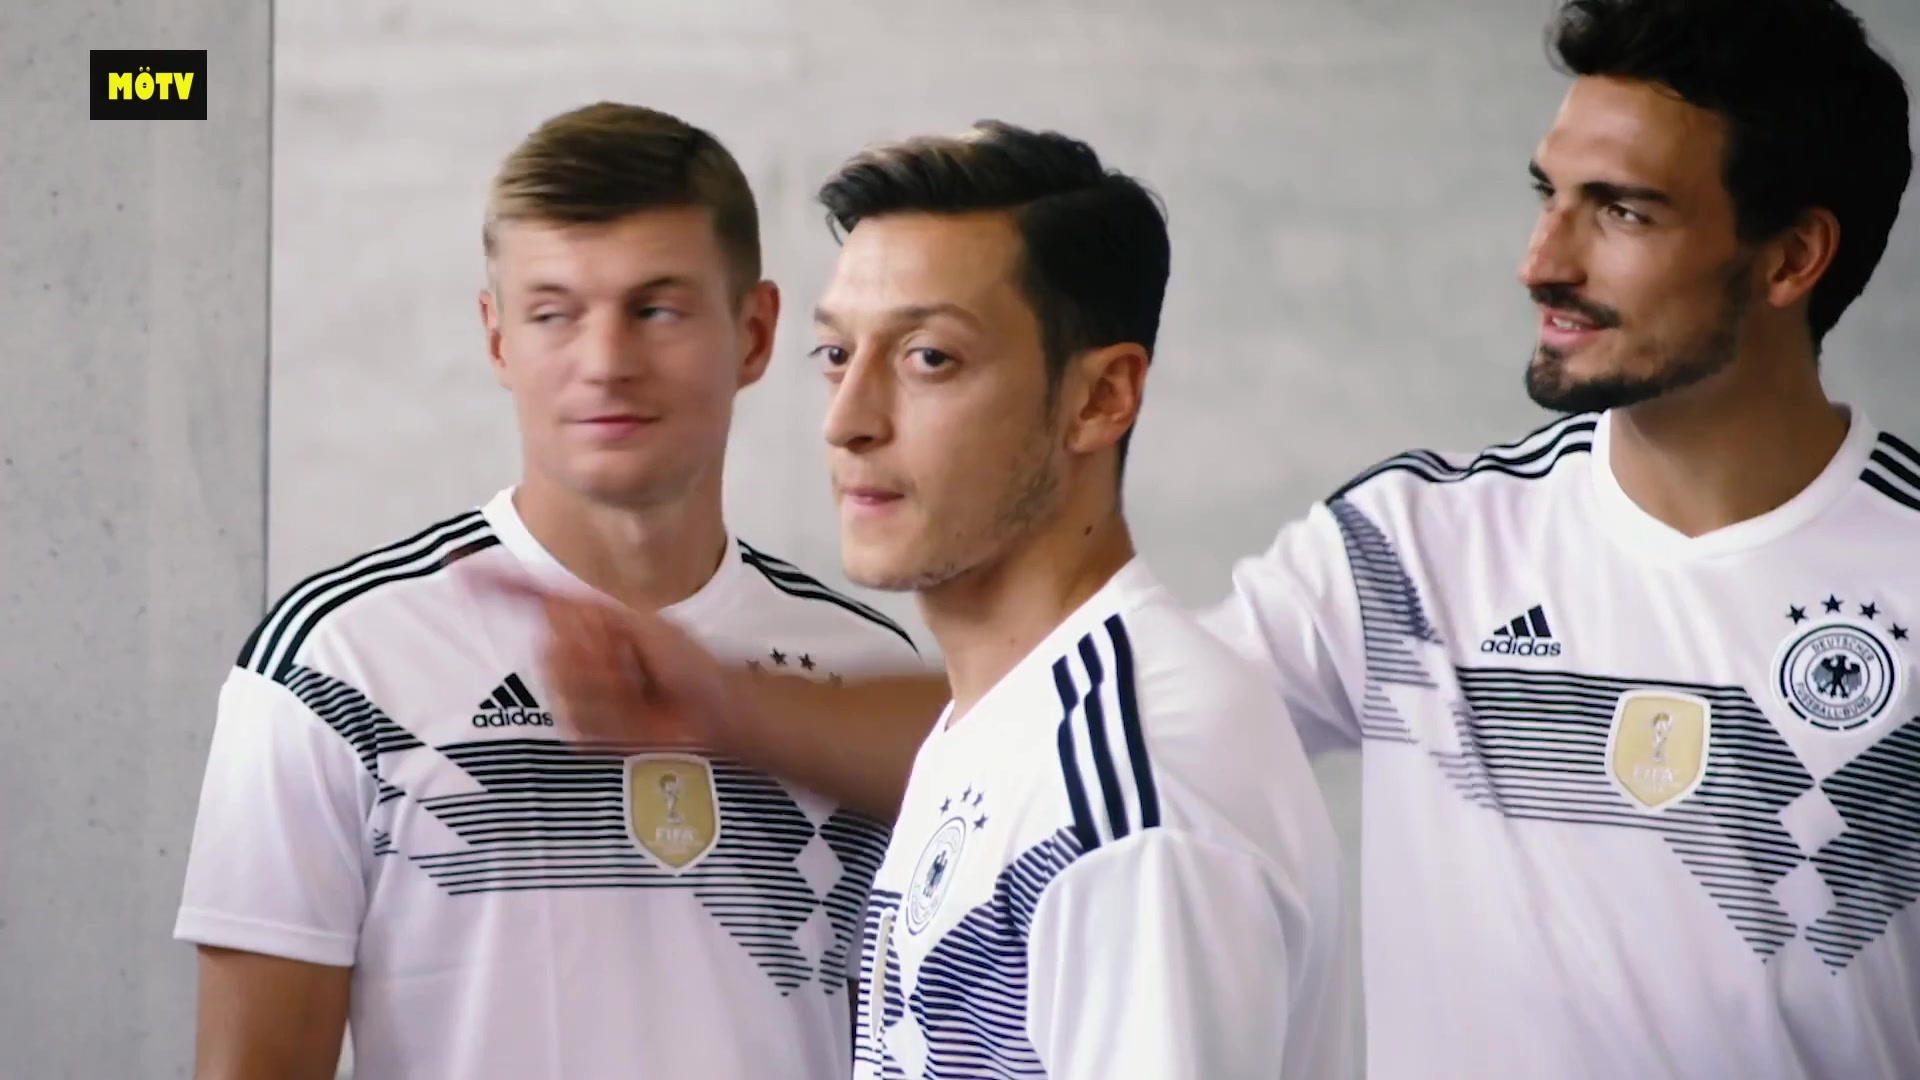 德国男足国家队主客场球衣风格